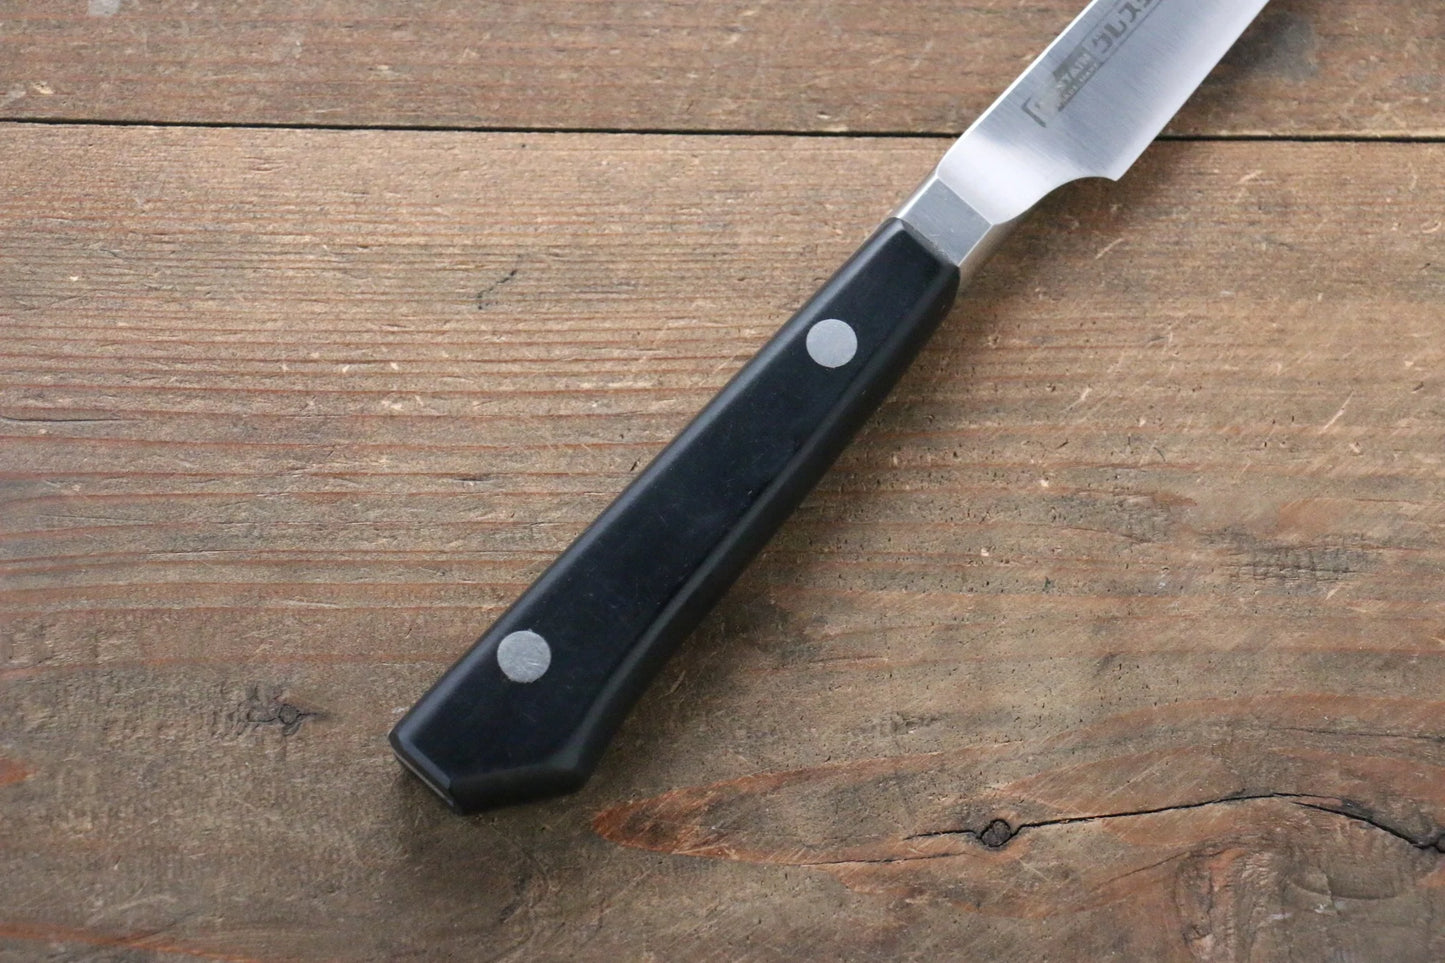 Spezialisiertes Schälmesser der Marke Glestain aus rostfreiem Stahl, japanisches Messer 